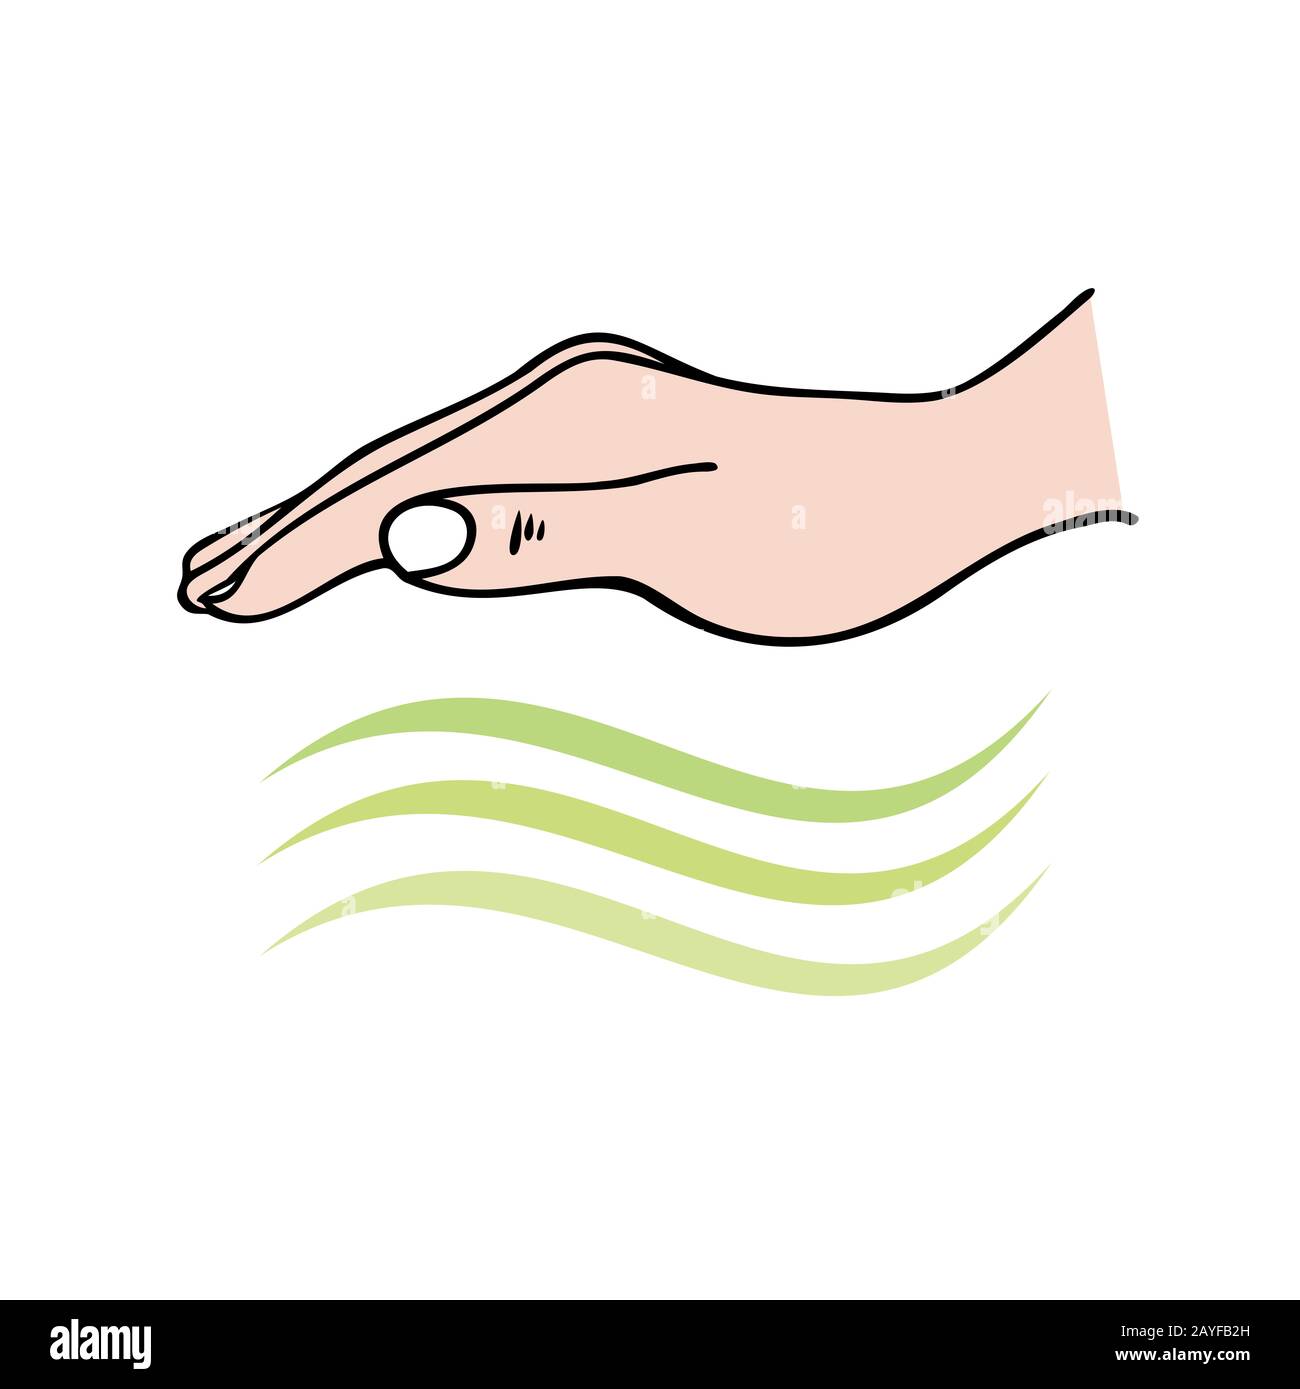 Curación manos-en mostrando mano enviando ondas de energía univeral para la curación emocional o física - para Reiki, Medicina alternativa Foto de stock